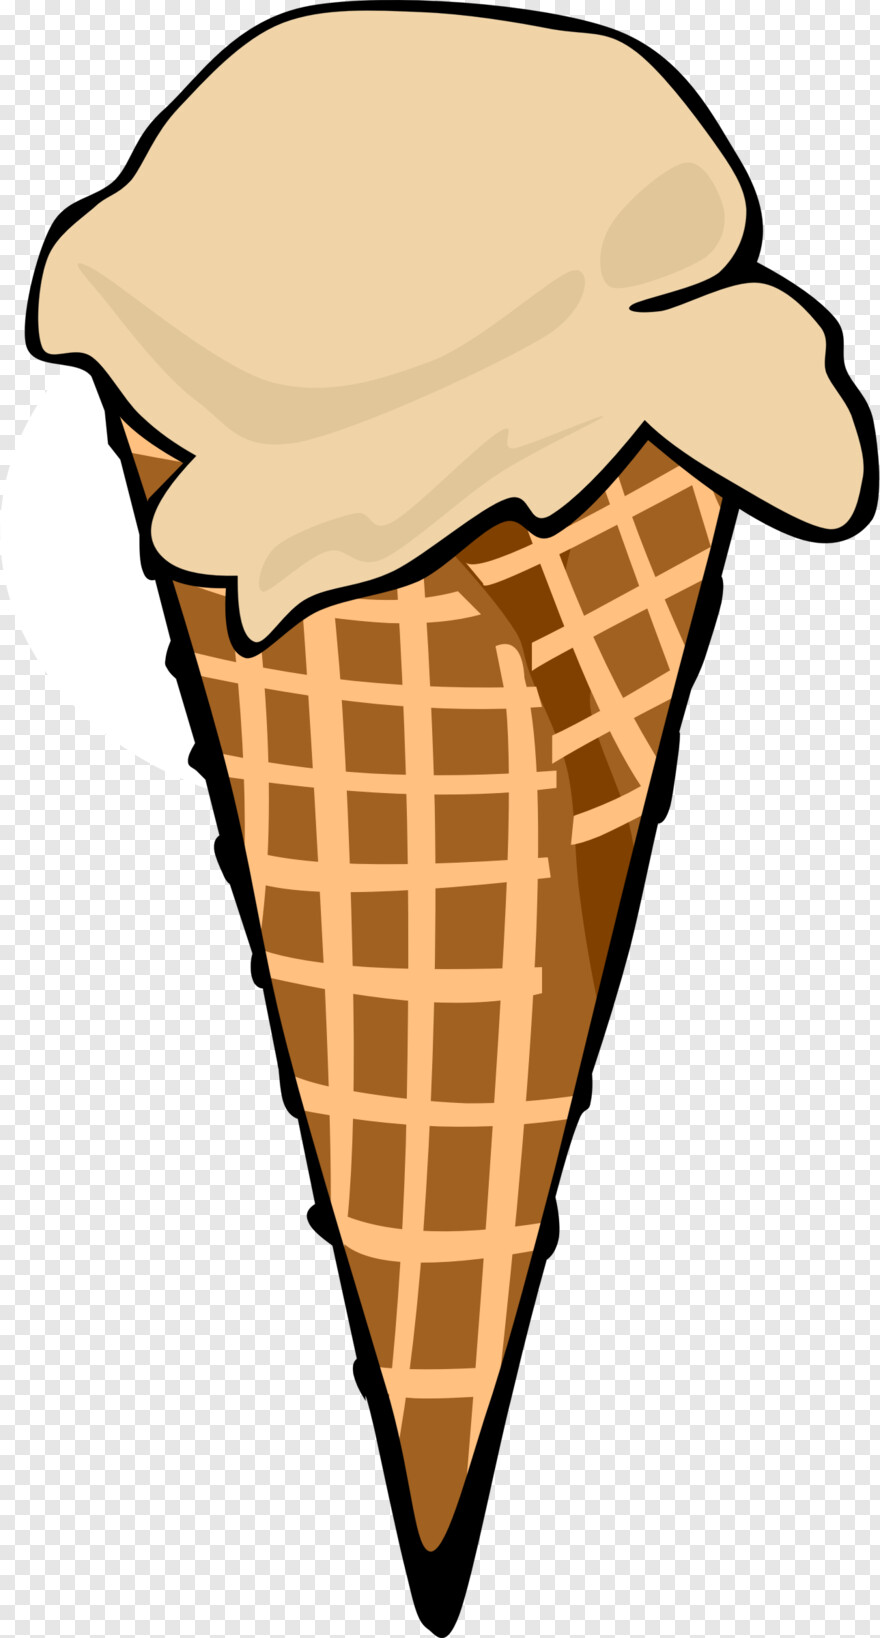 ice-cream-cone # 480323